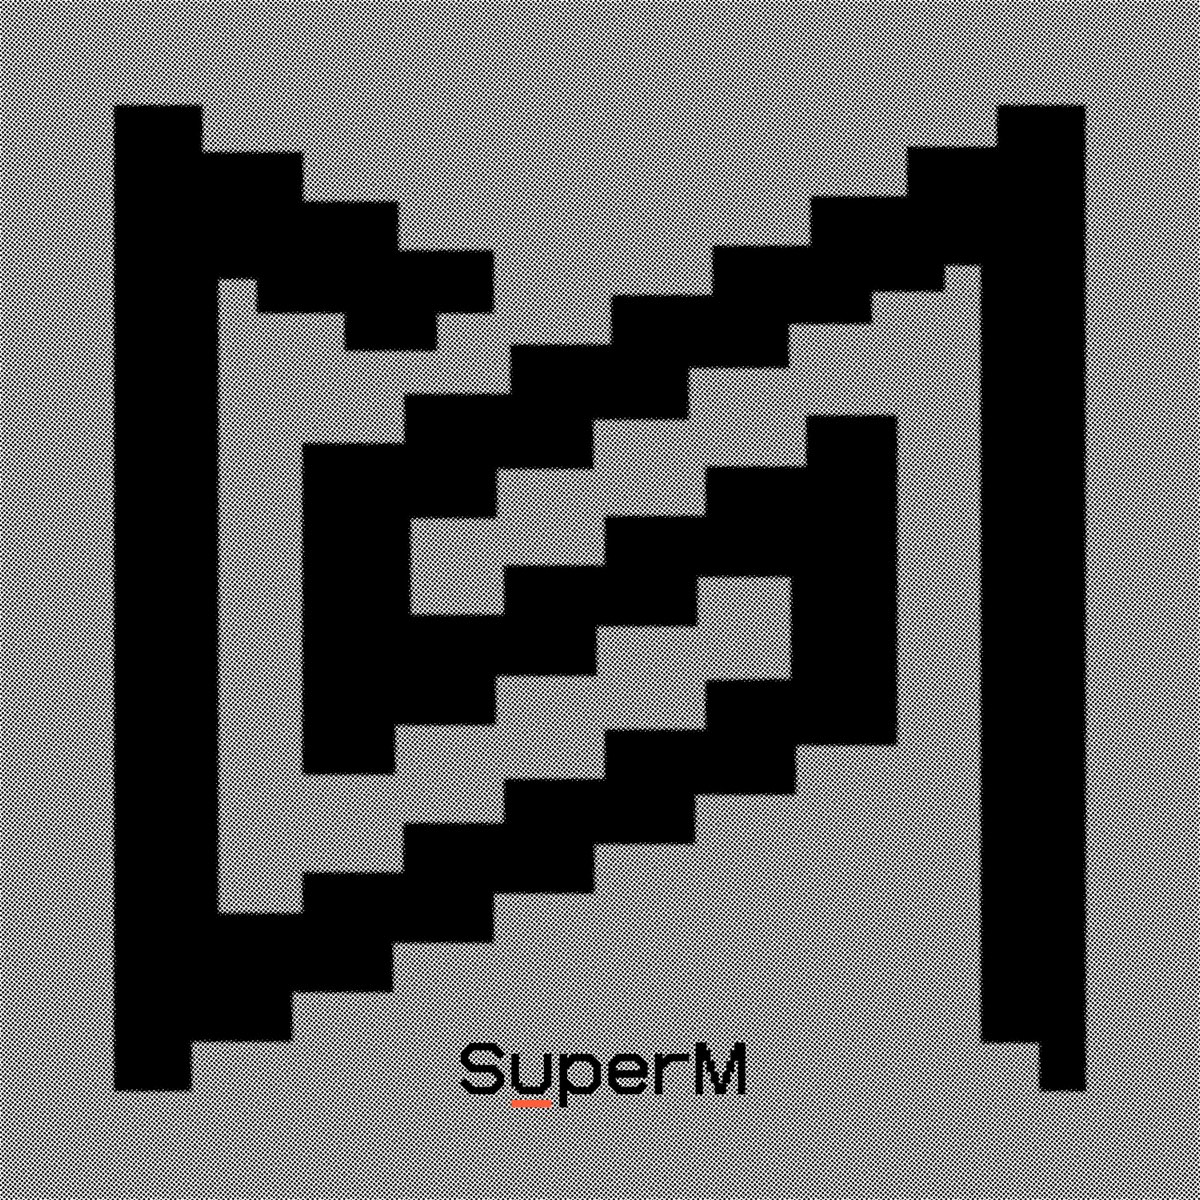 SuperM Super One cover artwork